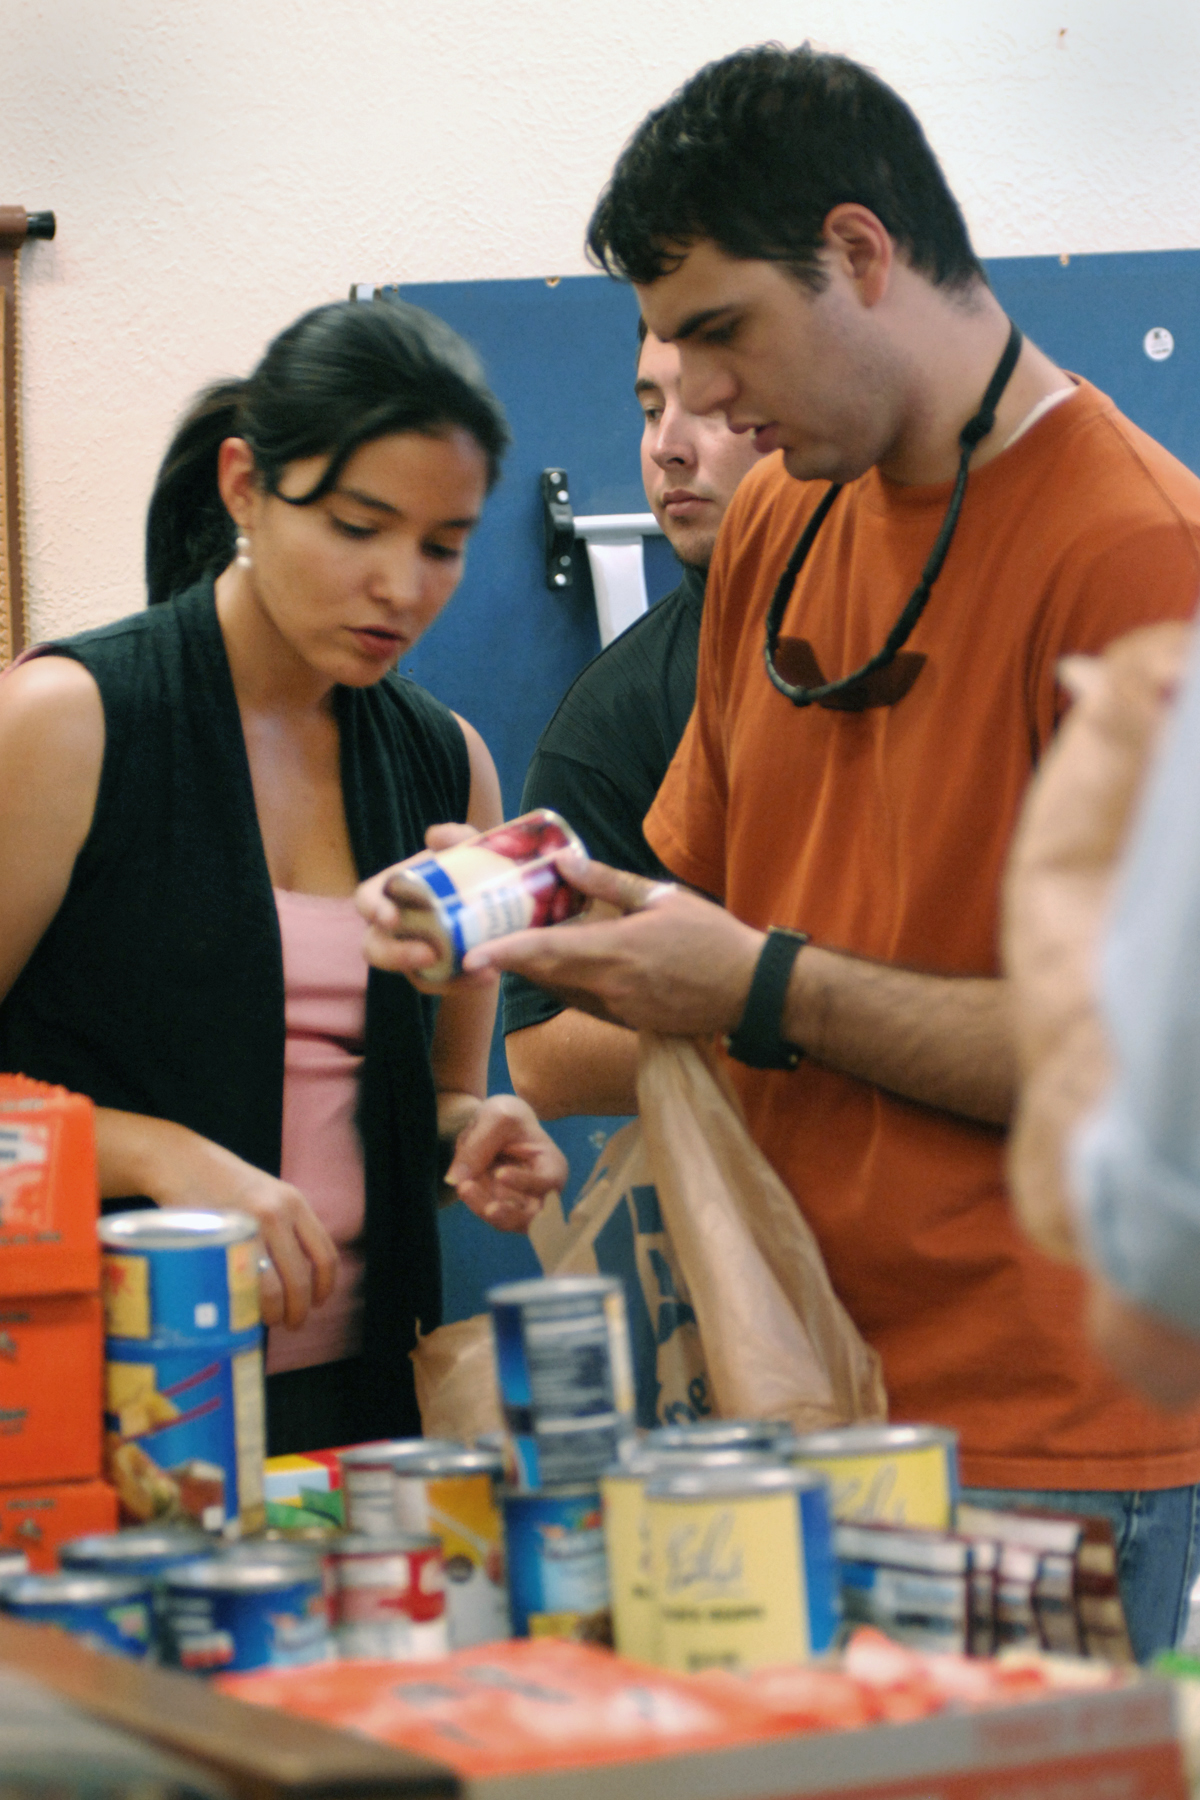 Haussamen and volunteer in orange sorting donations